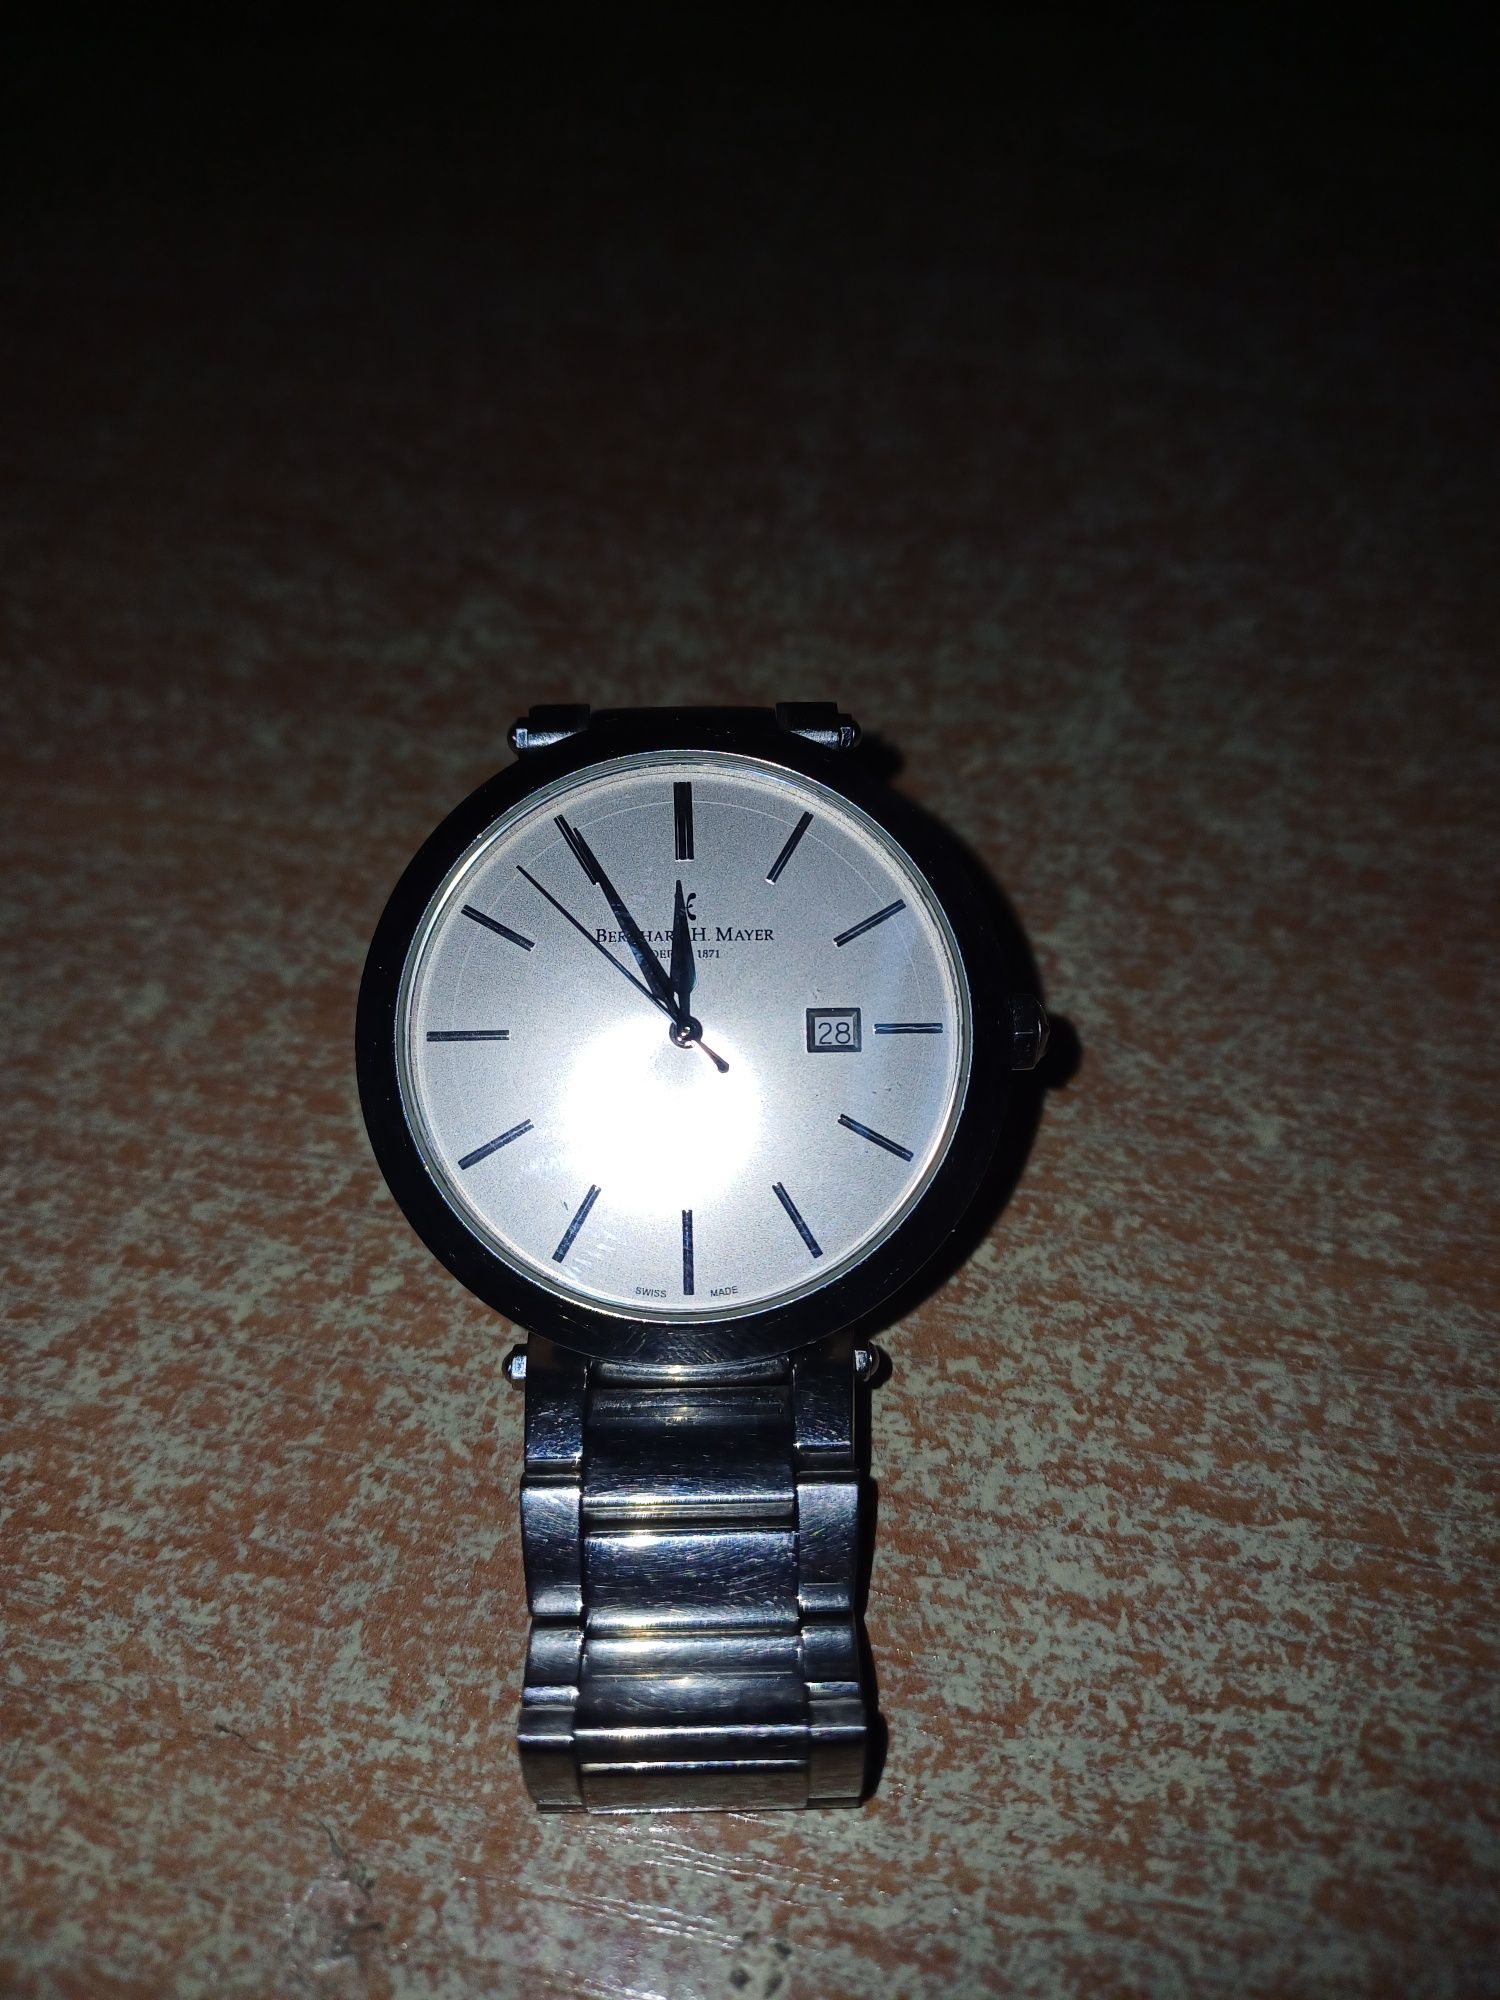 Продаю часы в отличном состоянии, марки Bernhard H Mayer.